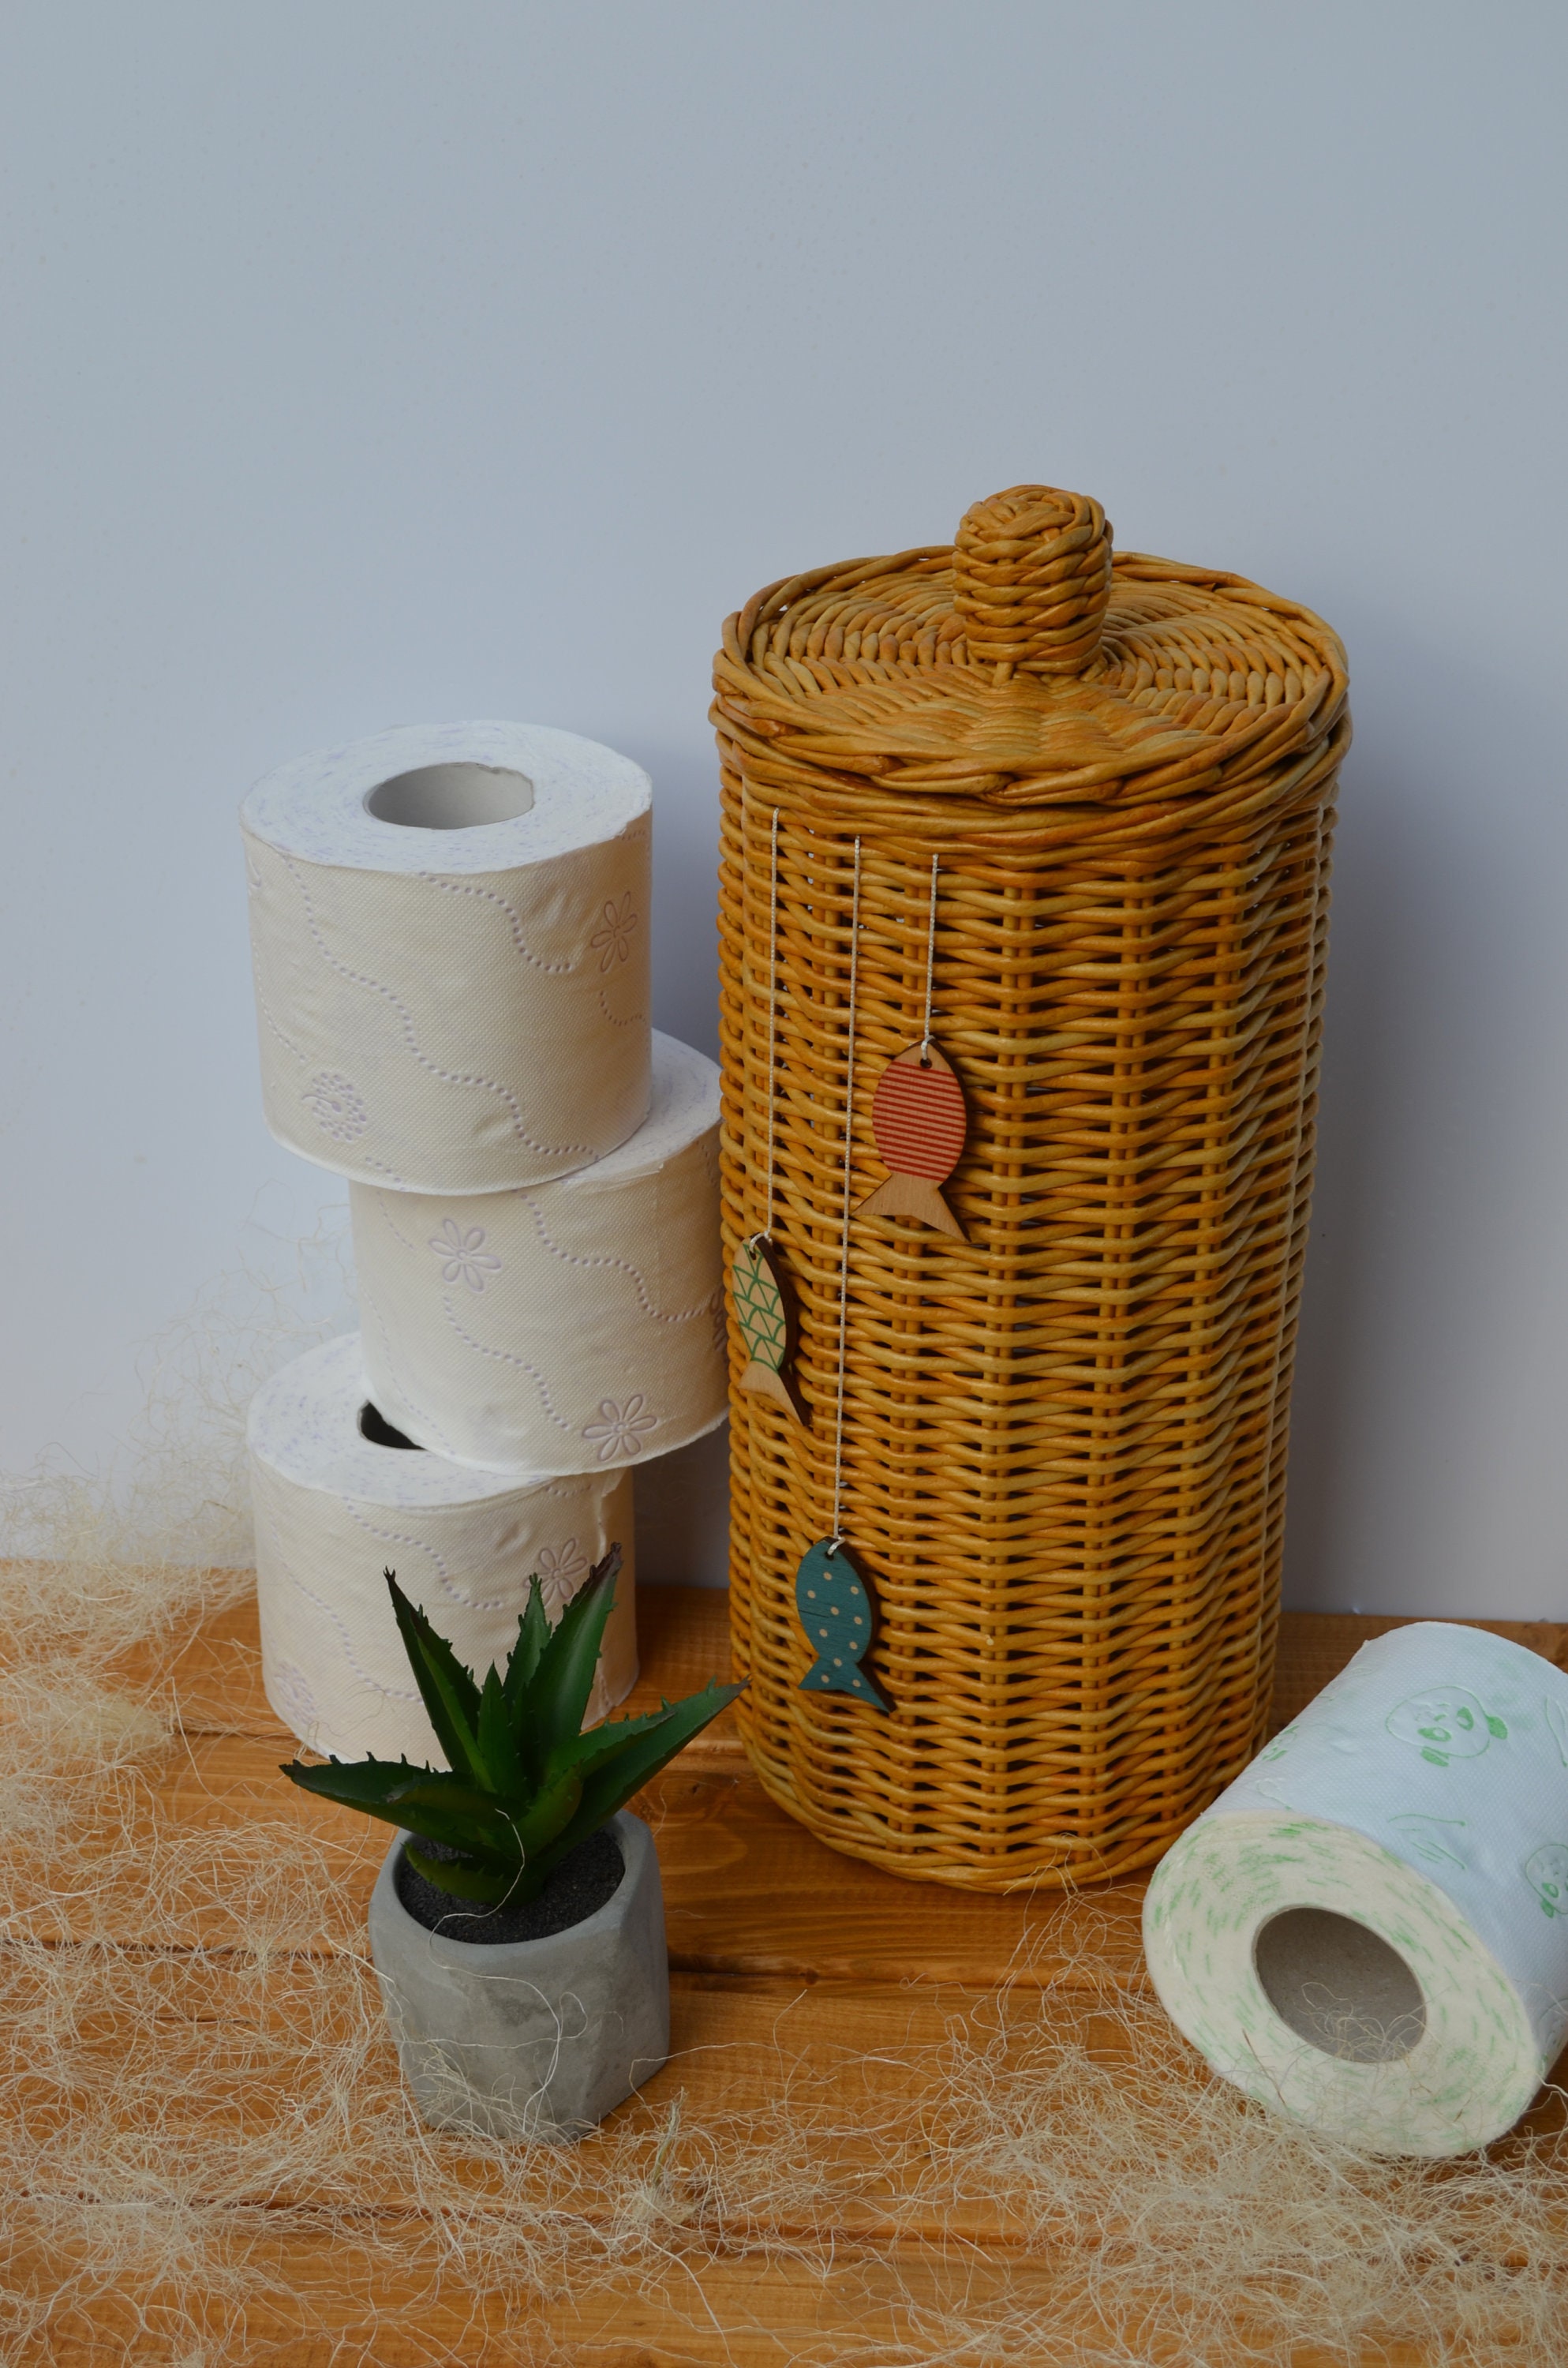 Panier Avec Rouleaux De Papier Toilette Et Eucalyptus Sur La Table Près Du  Mur De Brique Photo stock - Image du toilette, panier: 277679970